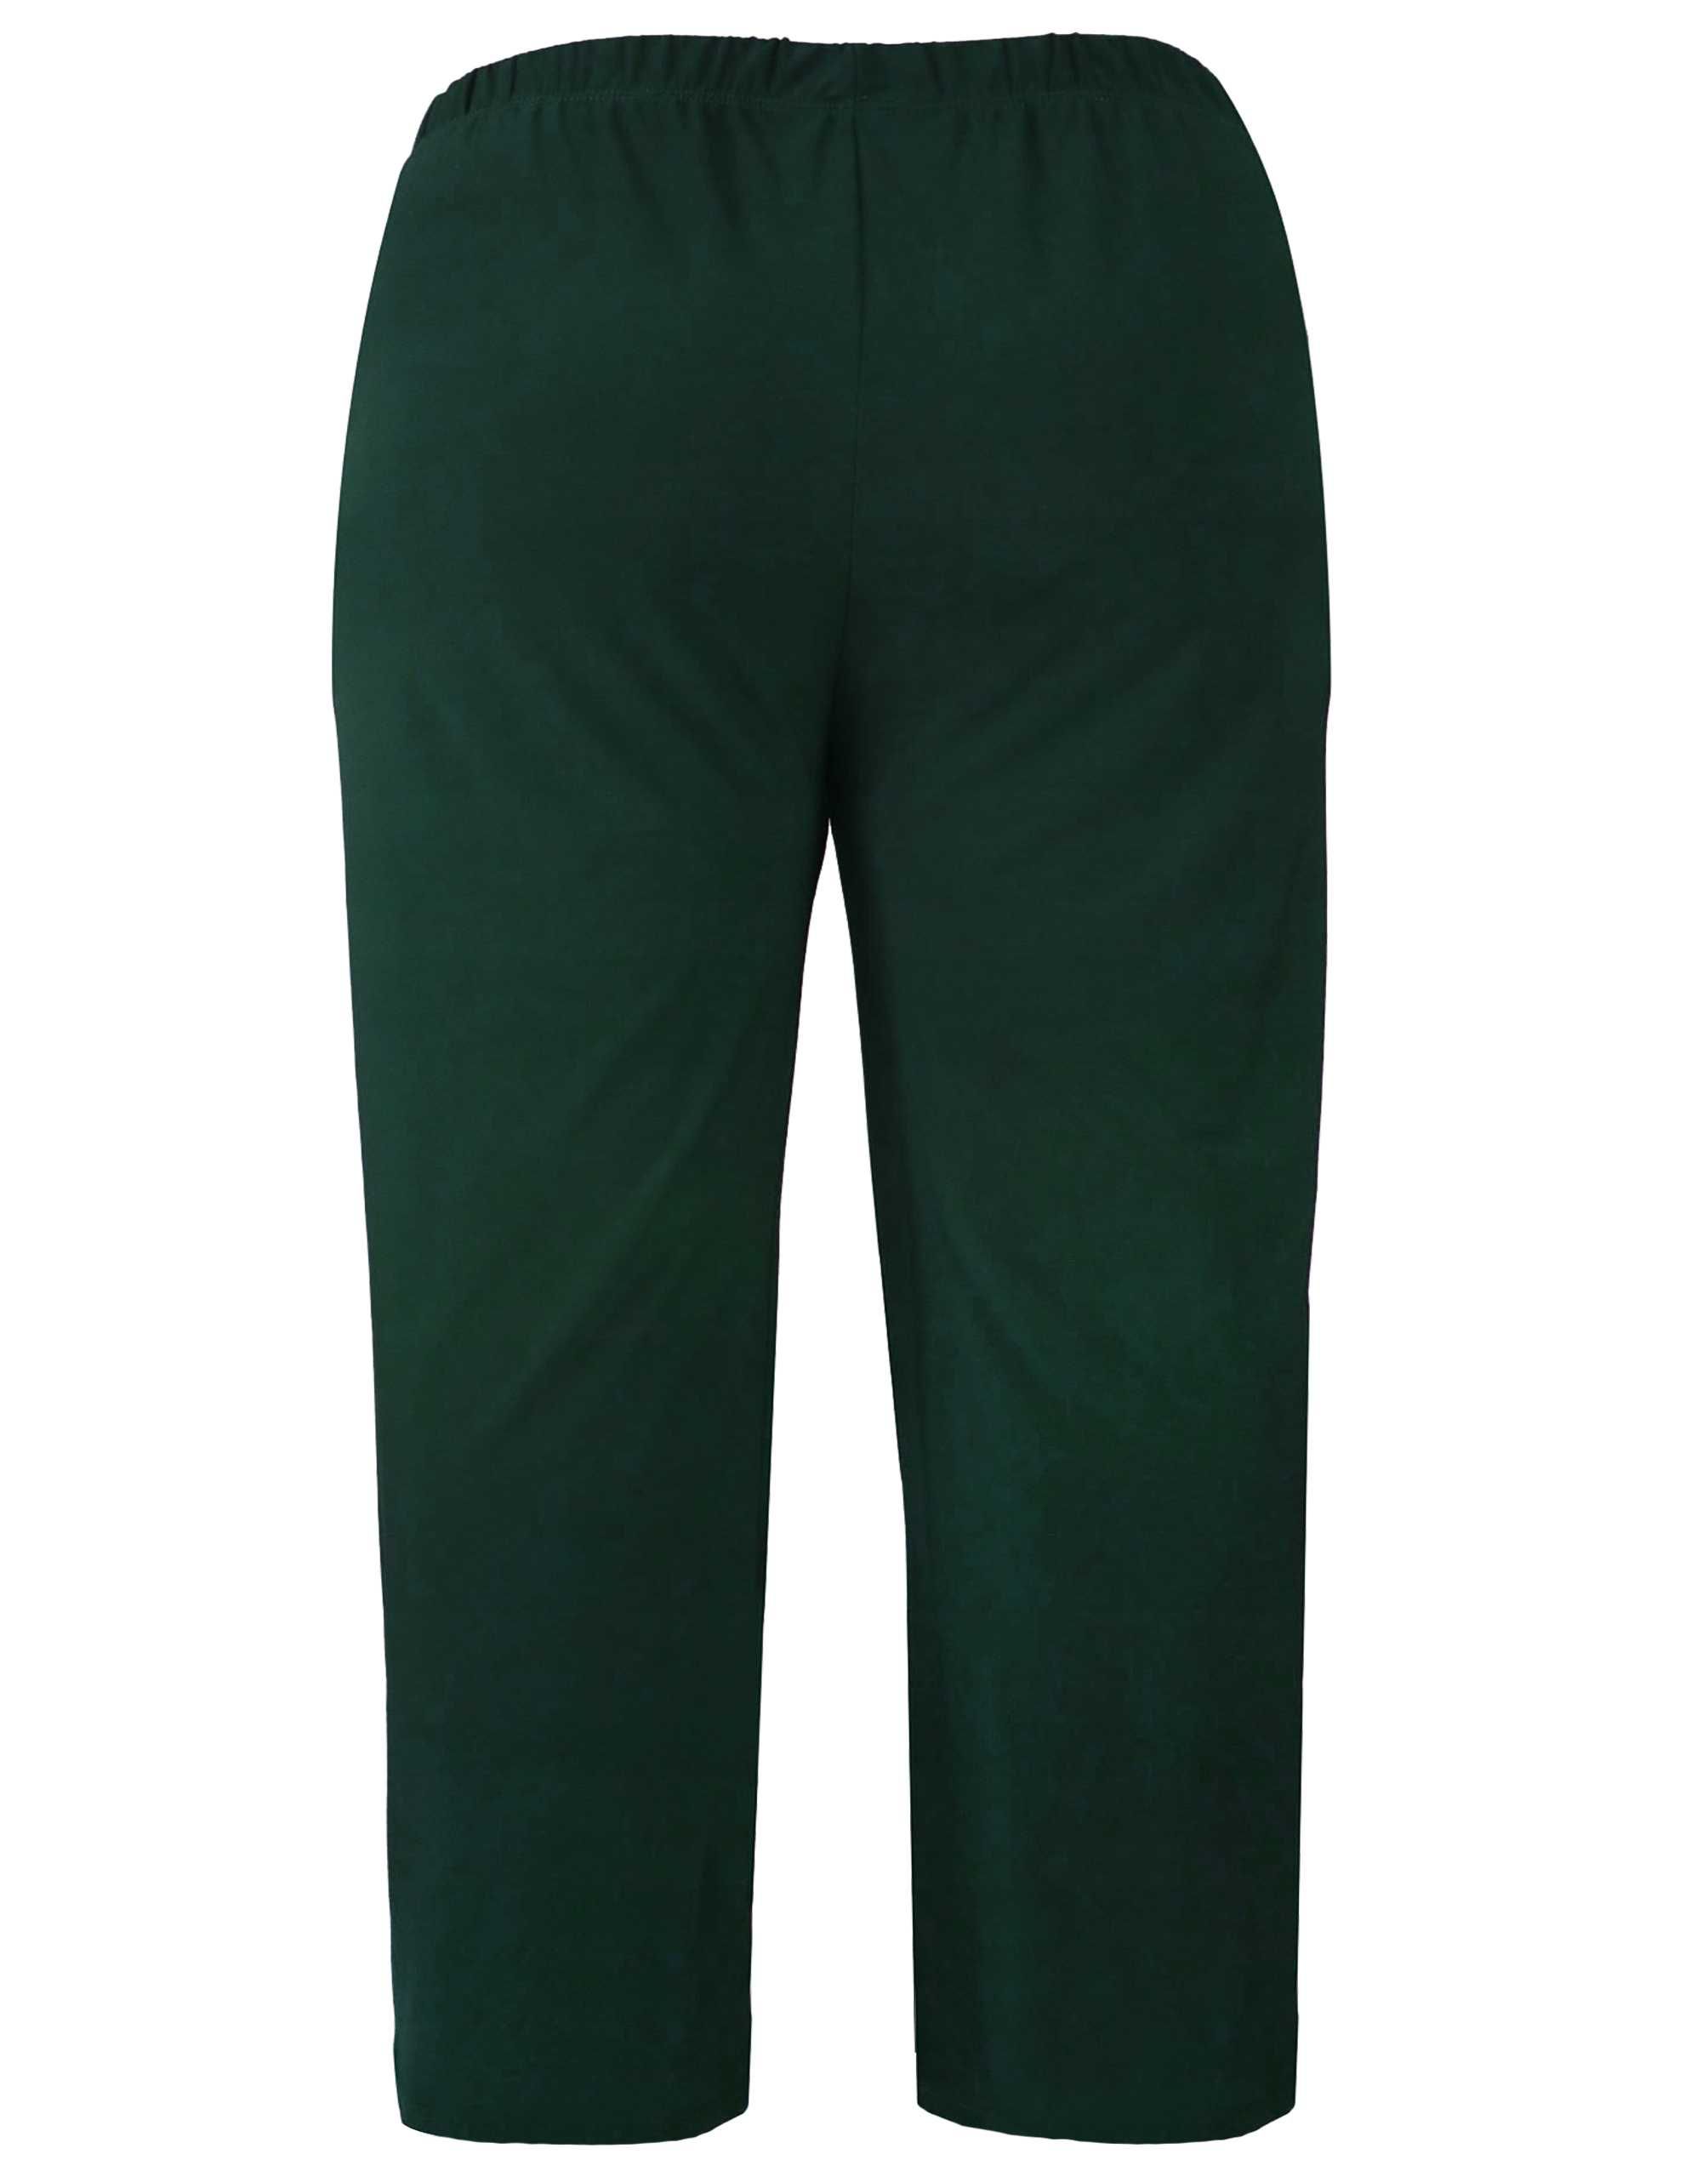 Spodnie wygodne, lejące, zieleń, ITY ,  Plus Size  2XL - 50 / 52